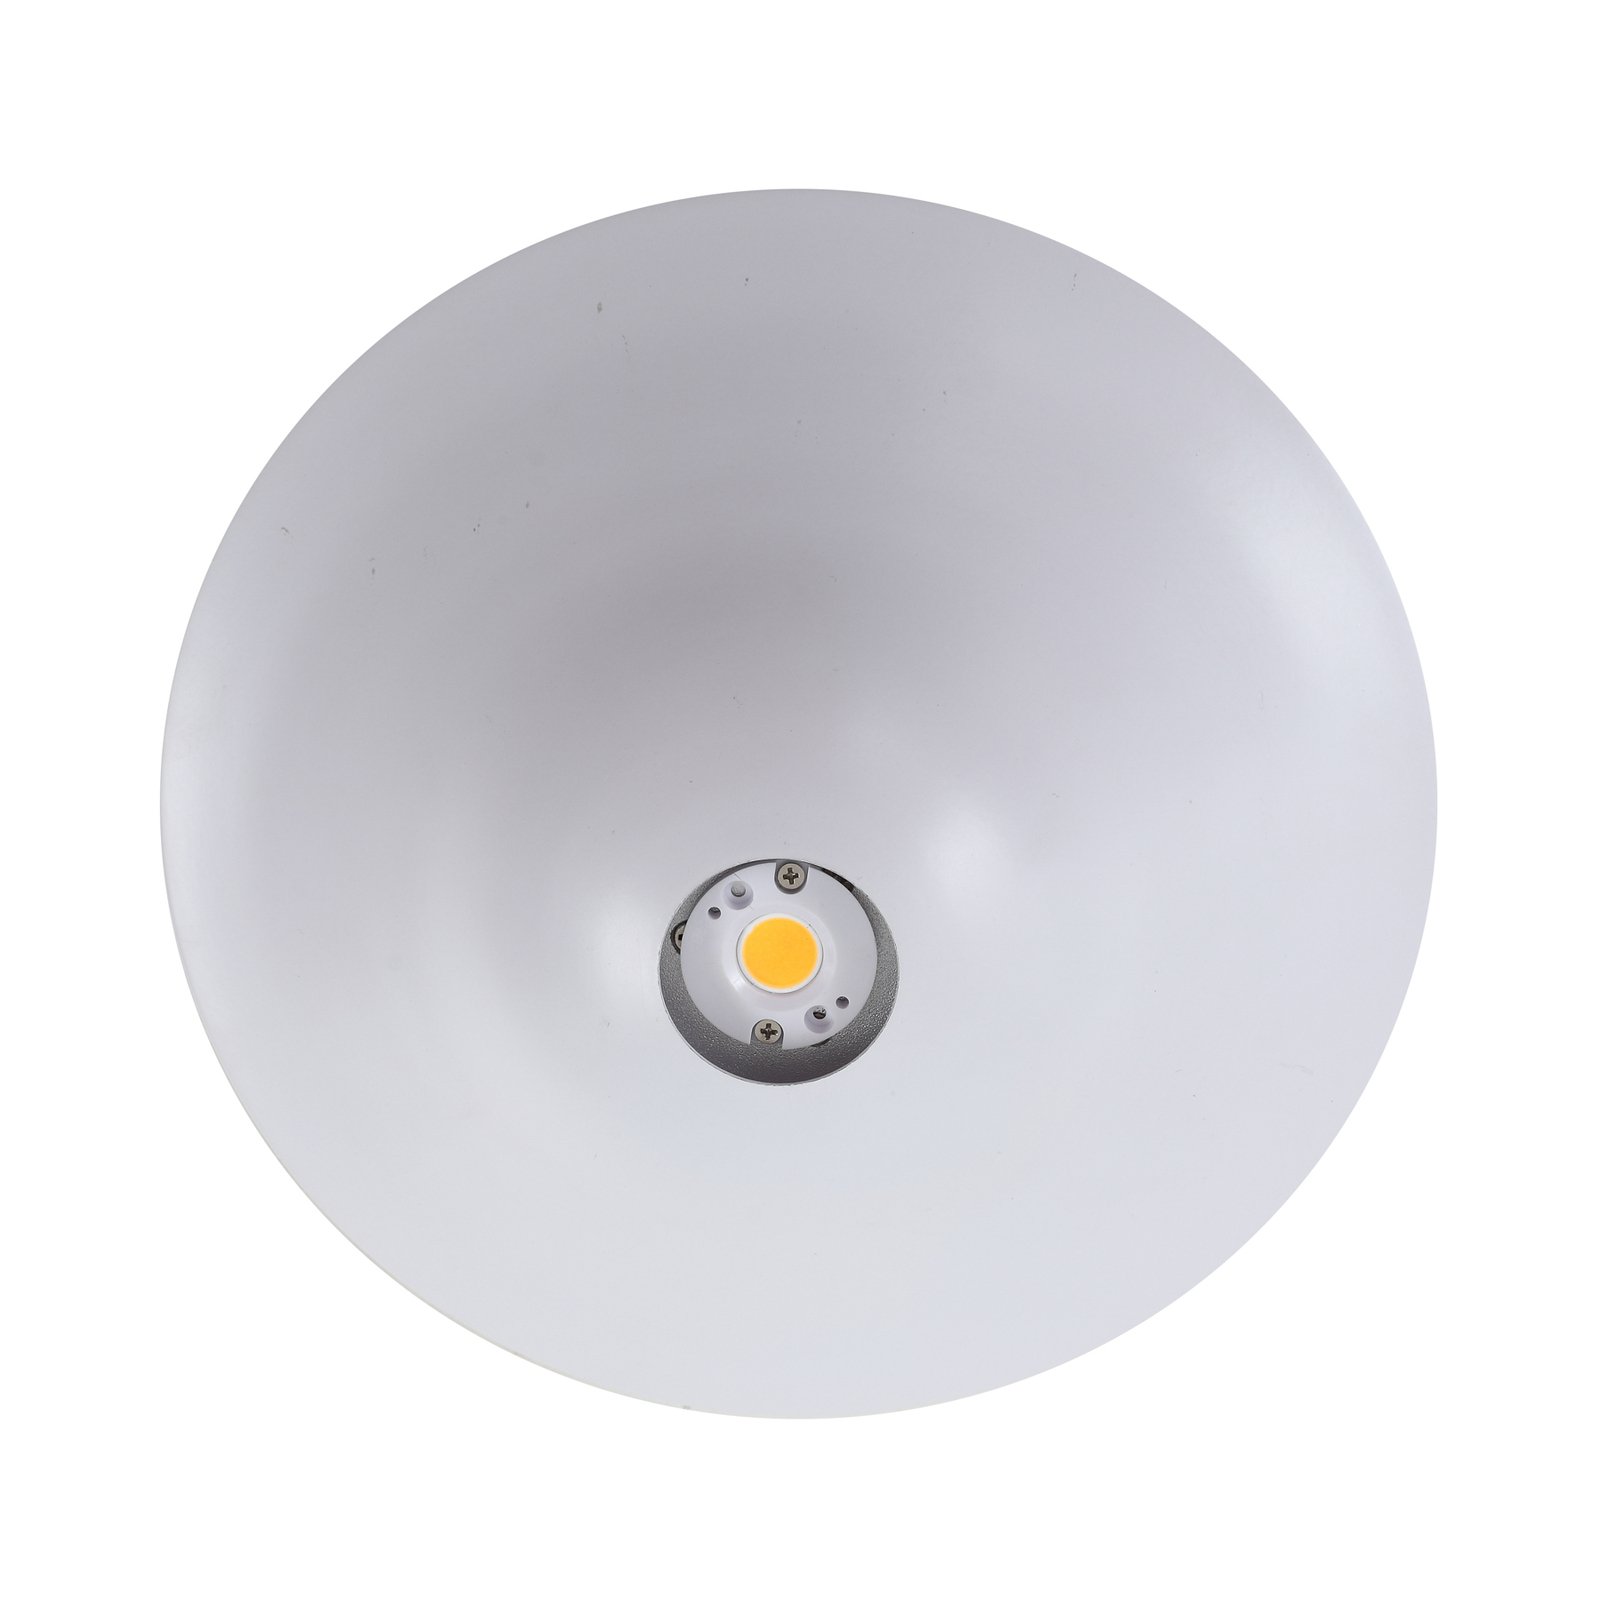 Lucande Orasa LED-Deckenleuchte, Glas, weiß/klar, Ø 43 cm